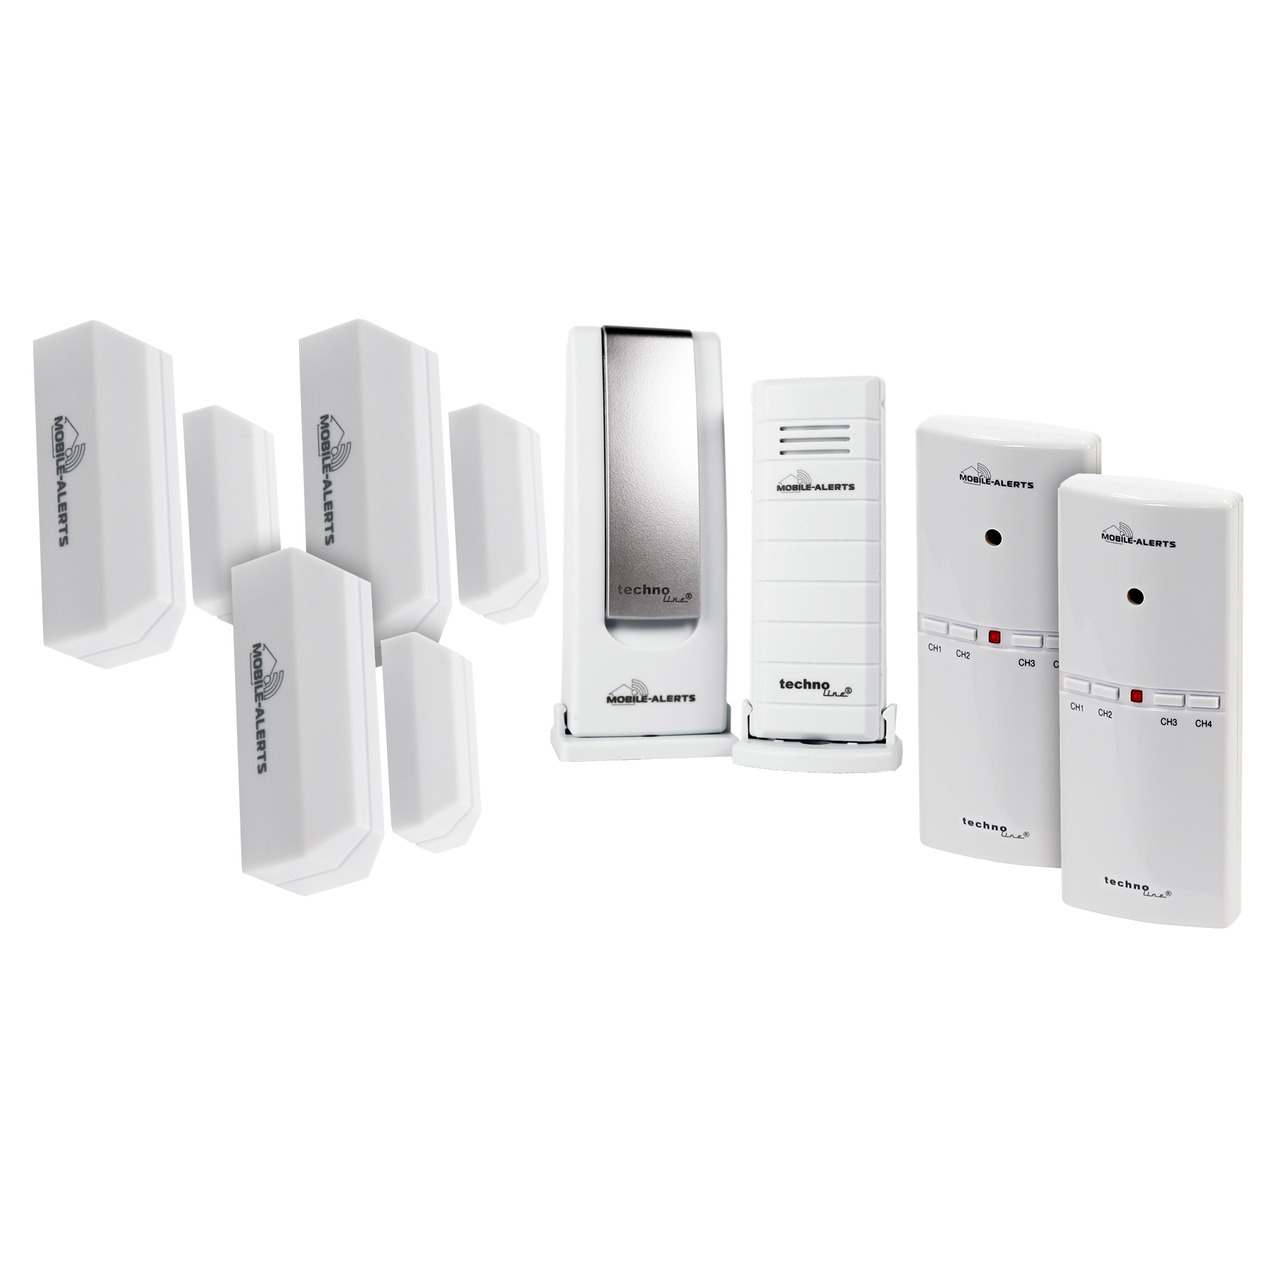 Mobile Alerts Sicherheits-Set 1x Gateway- 1x Temperatursensor- 3x Fensterkontakt- 2x Alarmgeber unter Klima - Wetter - Umwelt